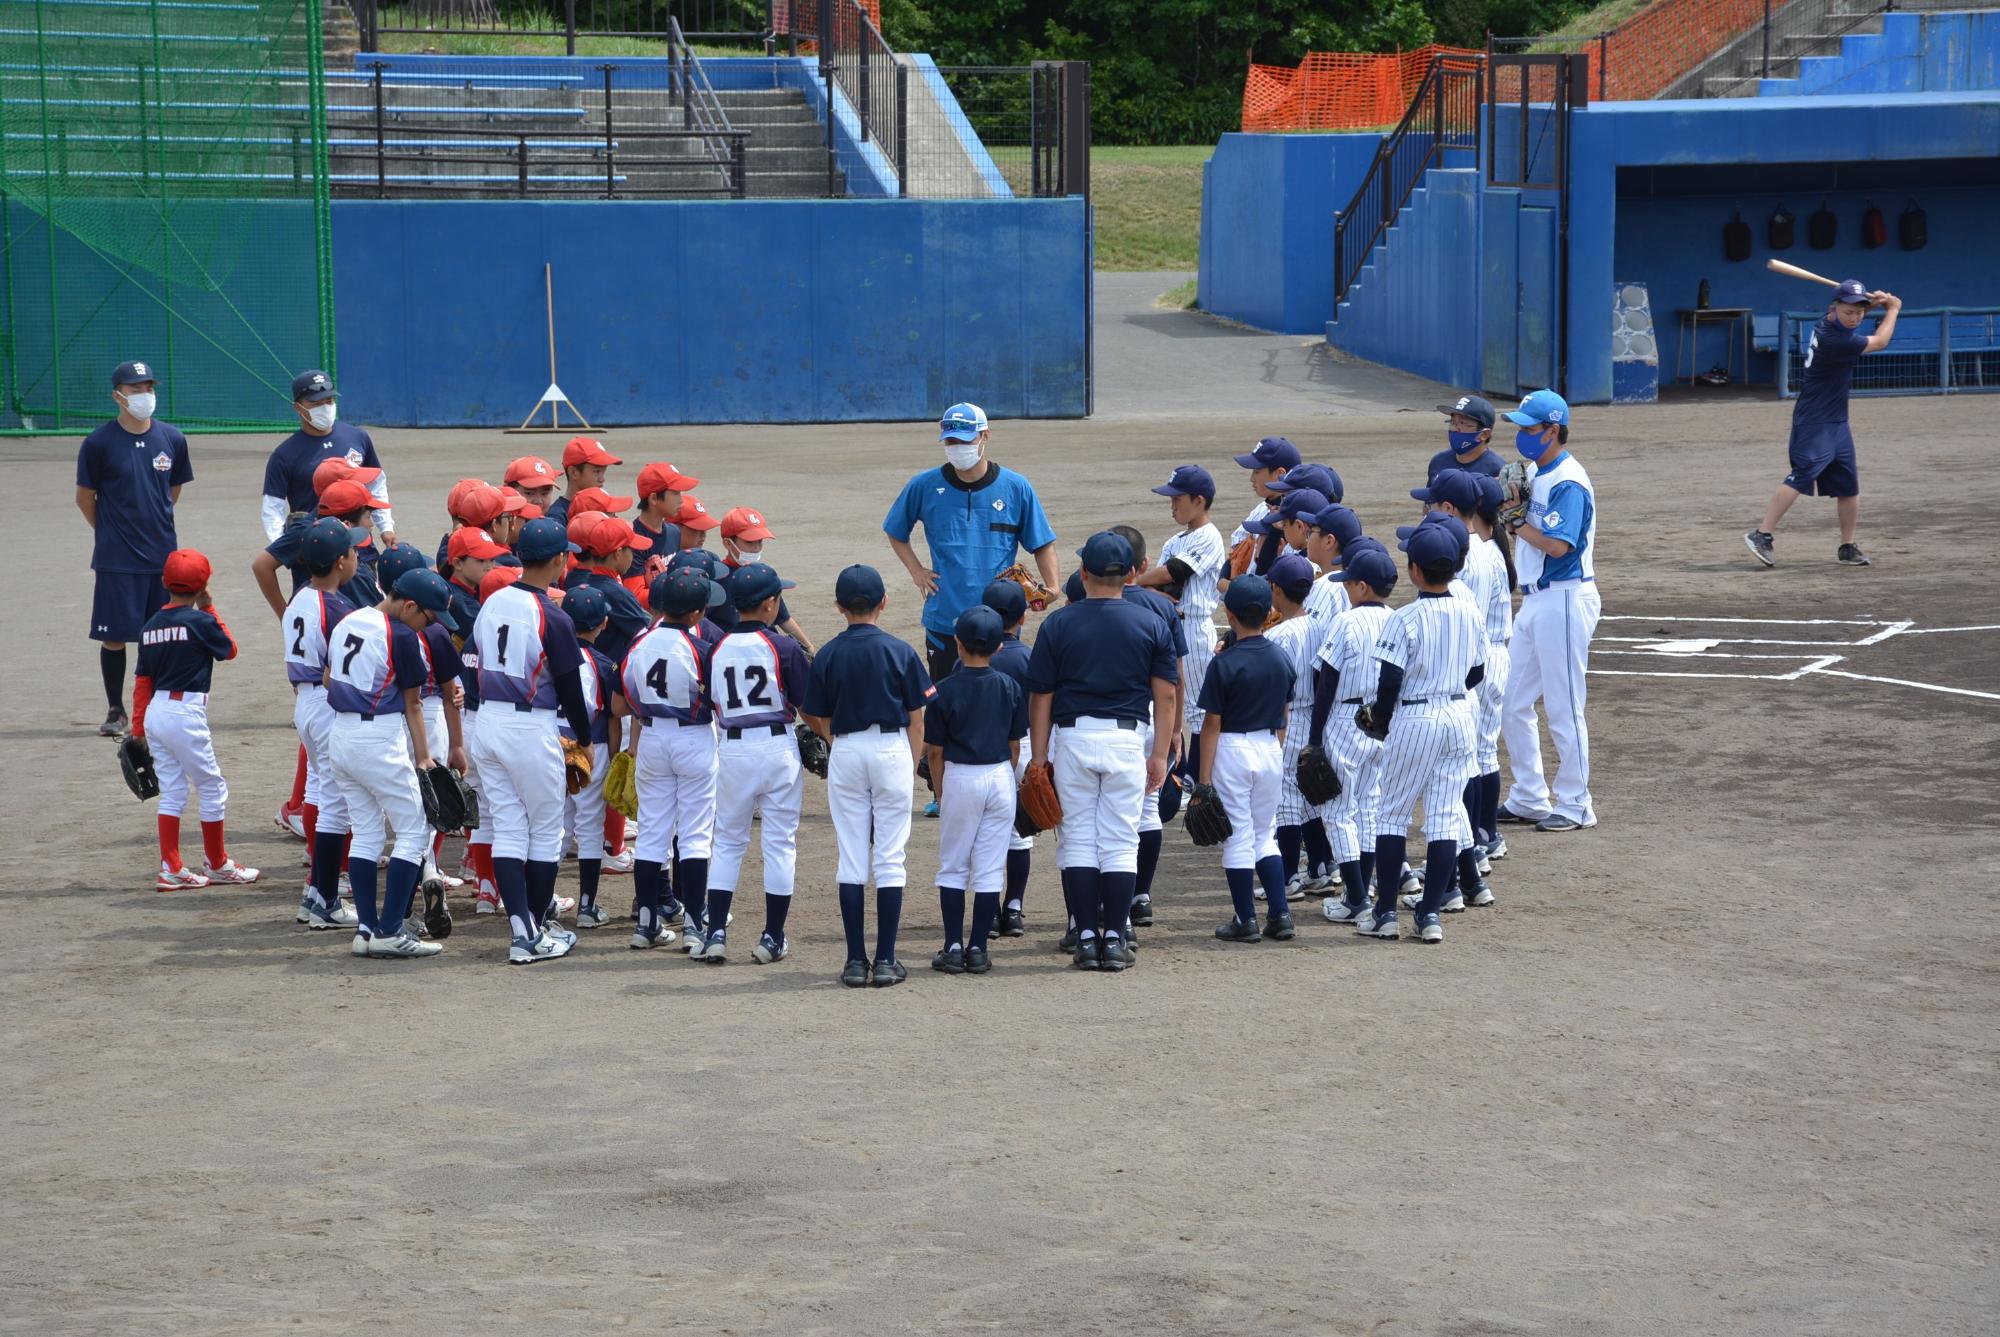 ユニフォームを着た野球少年たちが青色の服を着た男性の周りに集まり話を聞いている様子を後方から写した写真